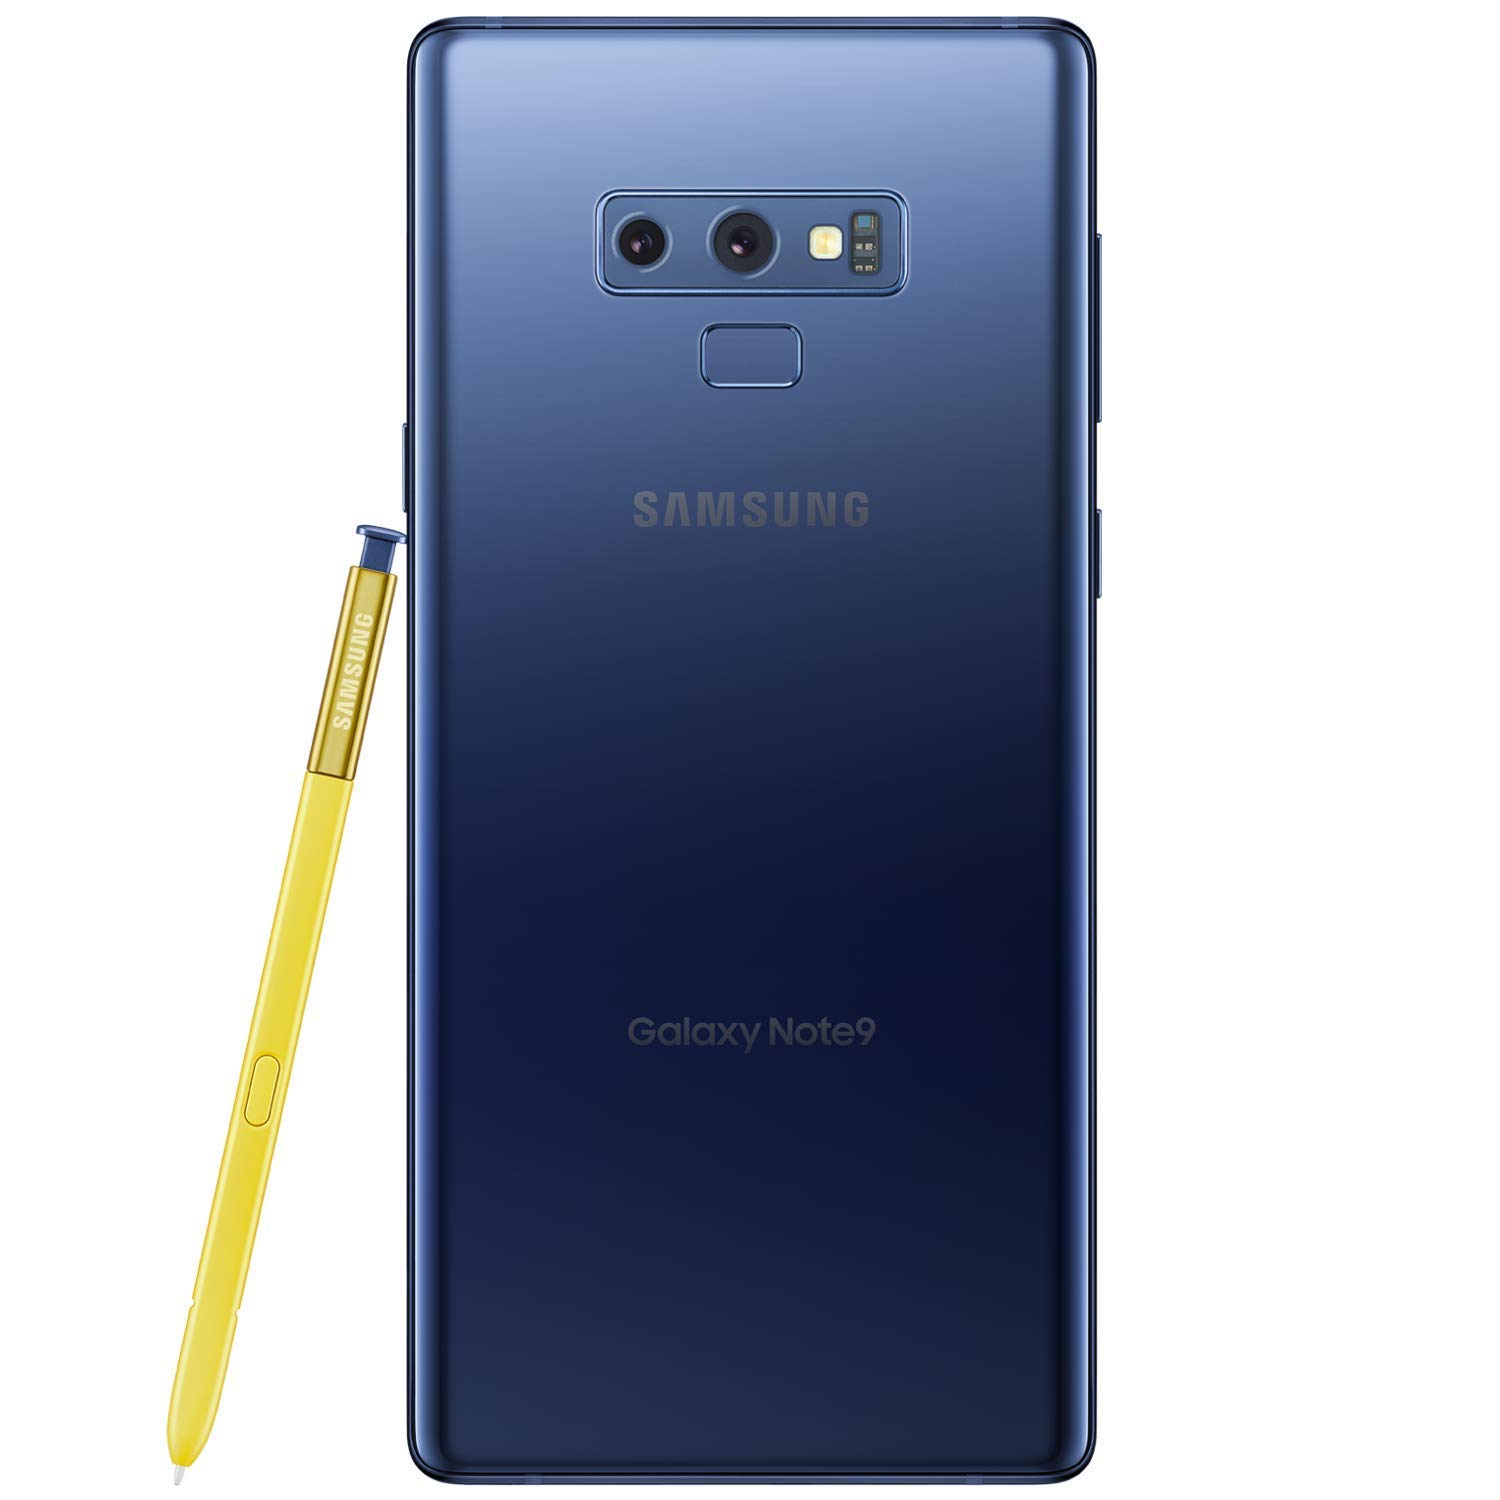 Samsung Galaxy Note 9,unlocked, 128GB, Ocean Blue - GSM Carriers (Renewed)